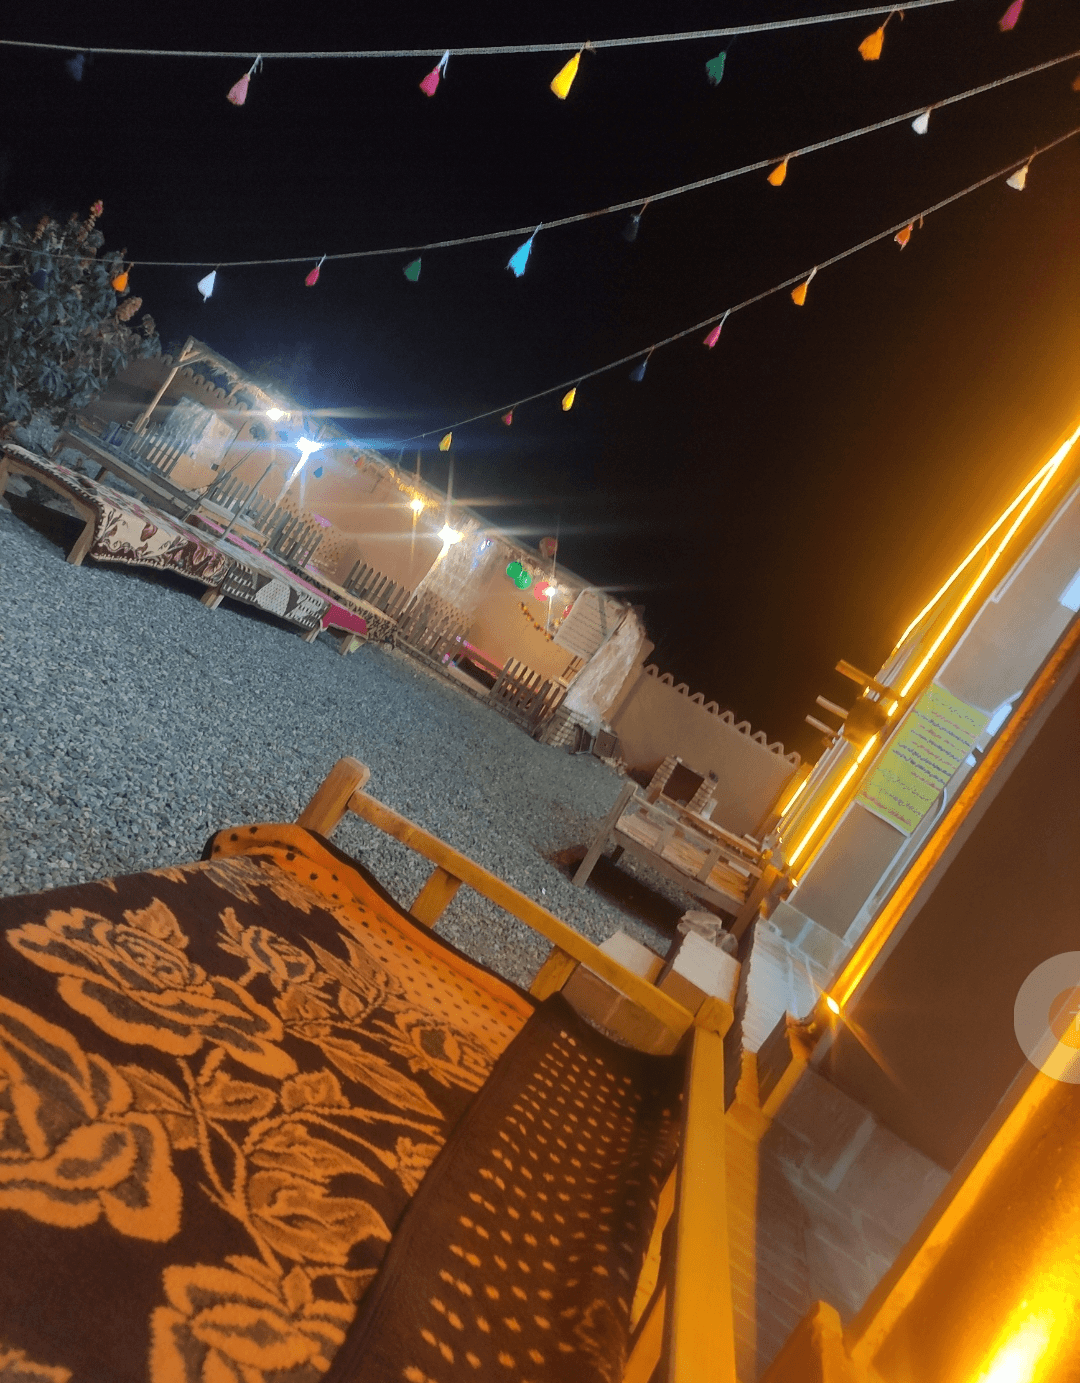 اقامتگاه بومگردی بابارجب در ابوزیدآباد